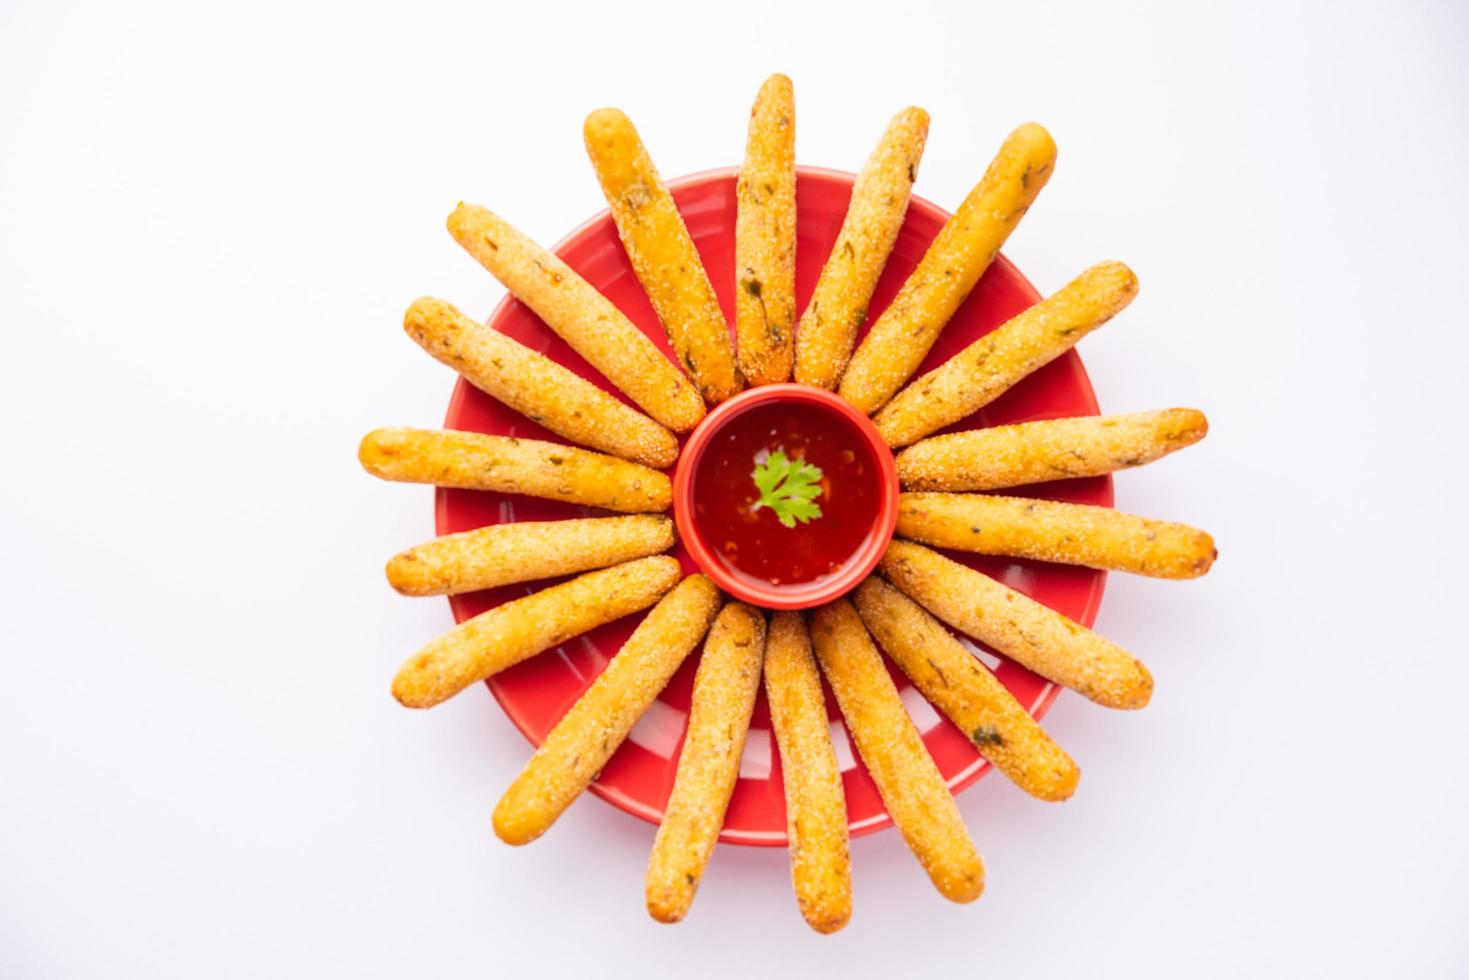 doigts croustillants de rava aloo ou semoule de pommes de terre bâtonnets de doigts frits servis avec du ketchup photo